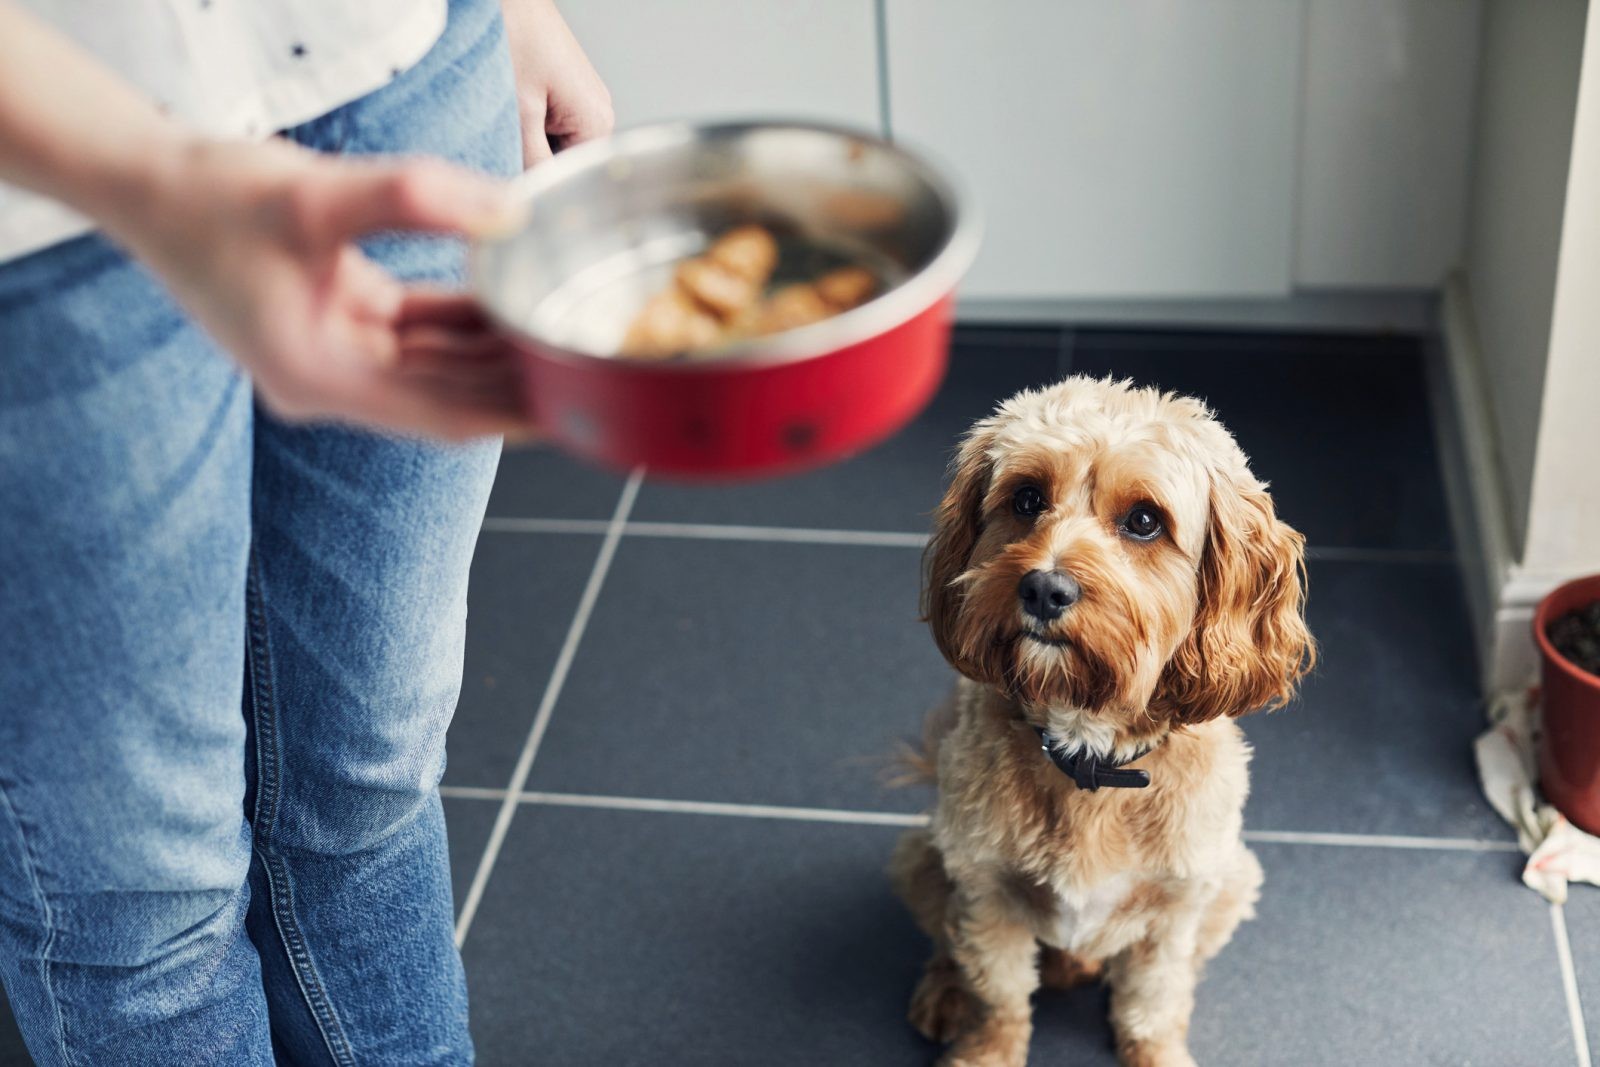 Ile razy dziennie dawać jedzenie psu? Raz dziennie wystarczy, a pies będzie dzięki temu zdrowszy